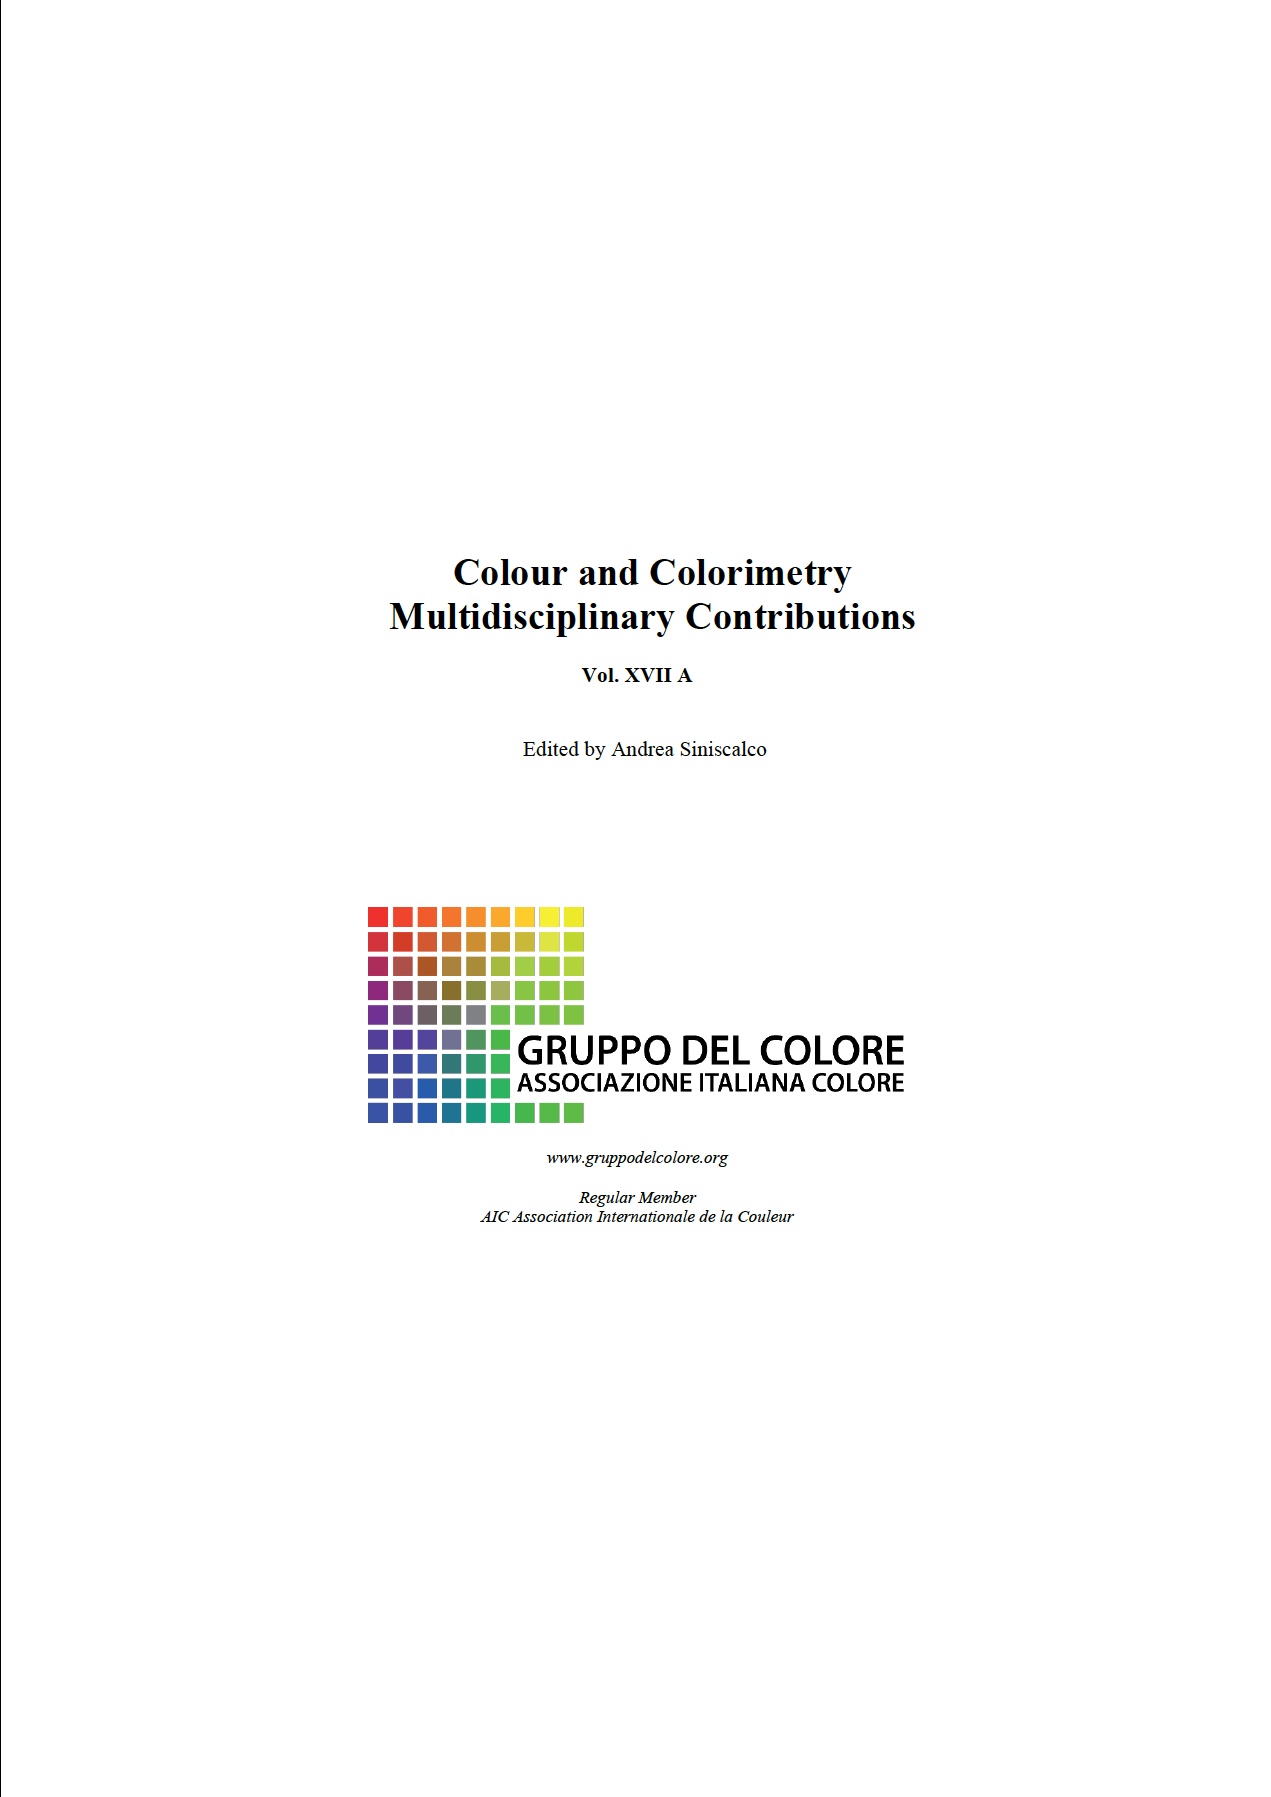 SINISCALCO Andrea (Ed.) 2022. Colour and Colorimetry: Multidisciplinary Contributions. Vol 17A